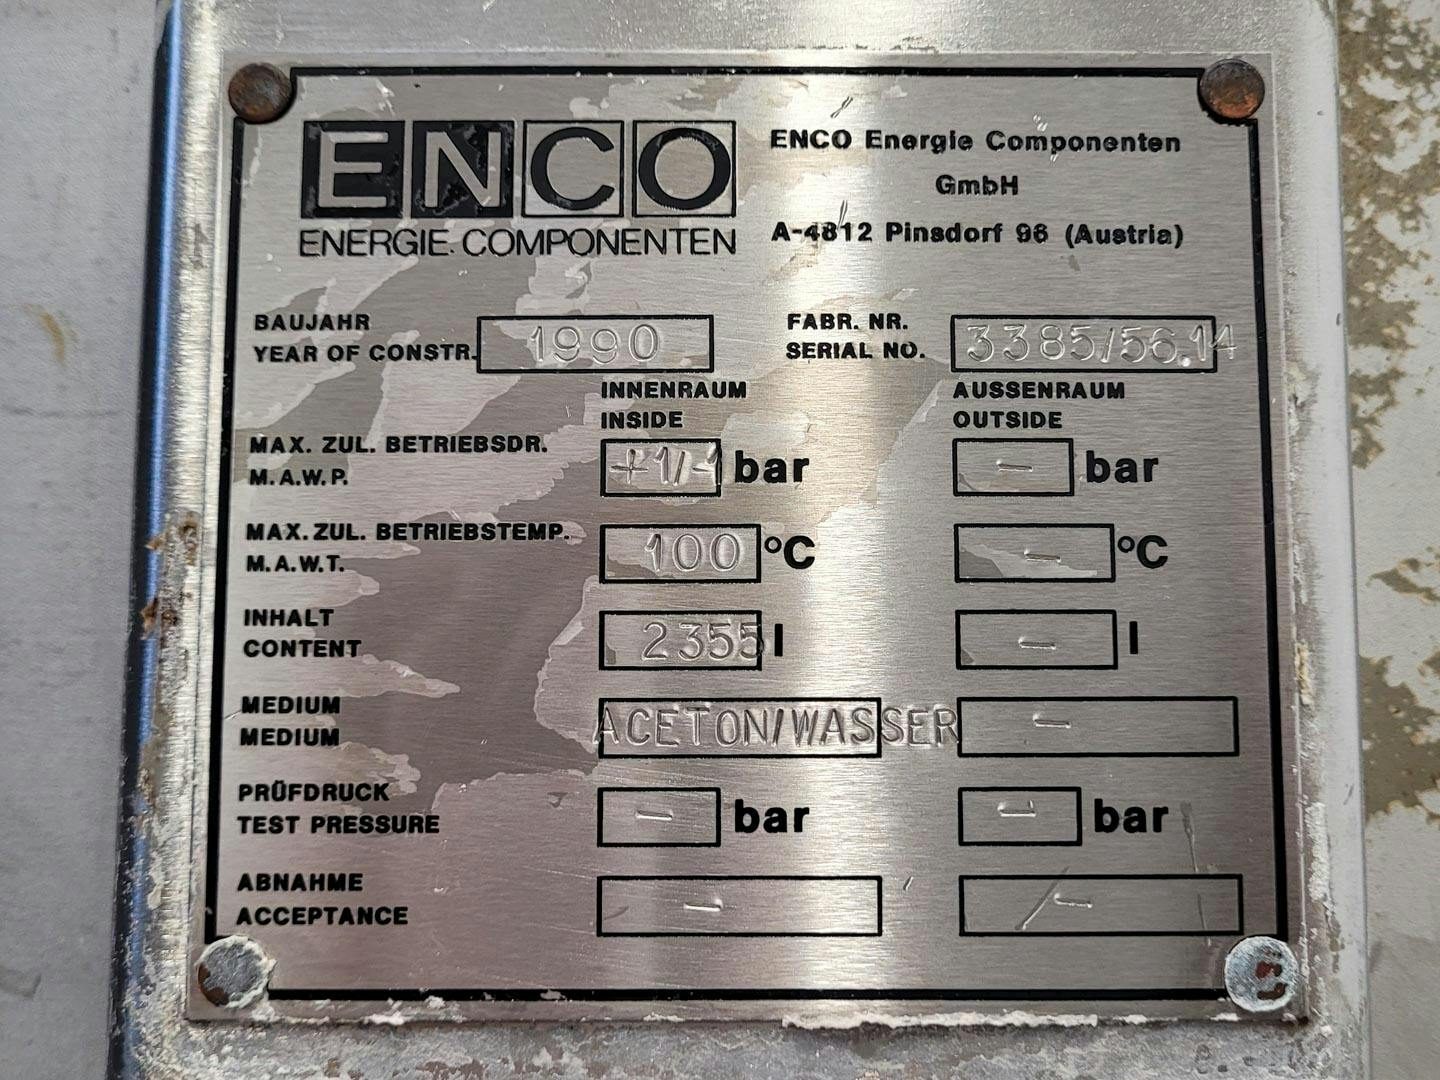 Enco 2355 Ltr. - Pressure vessel - image 7